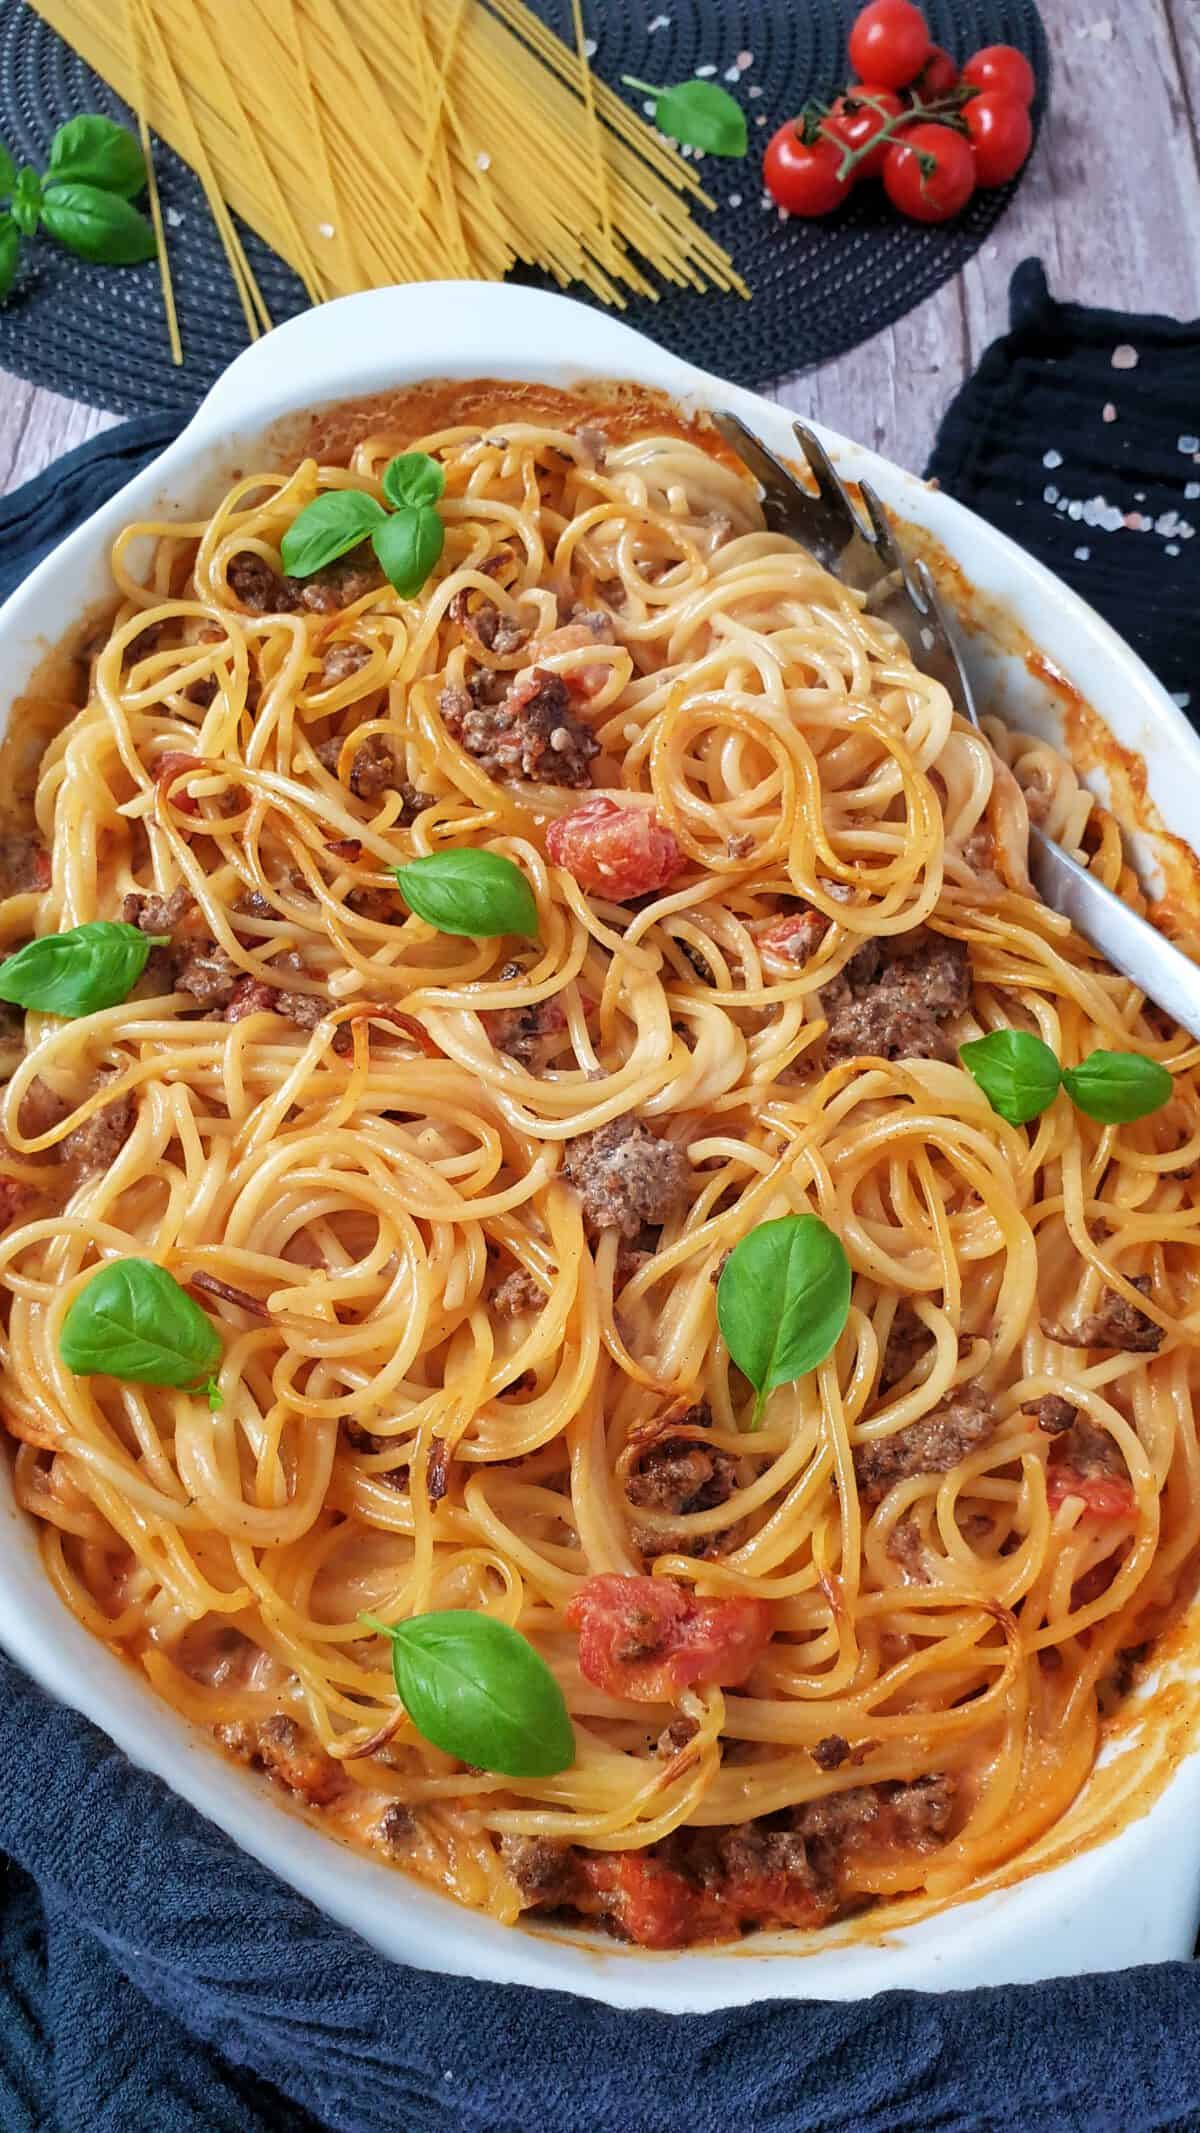 Spaghetti Auflauf mit Hackfleisch - Lydiasfoodblog